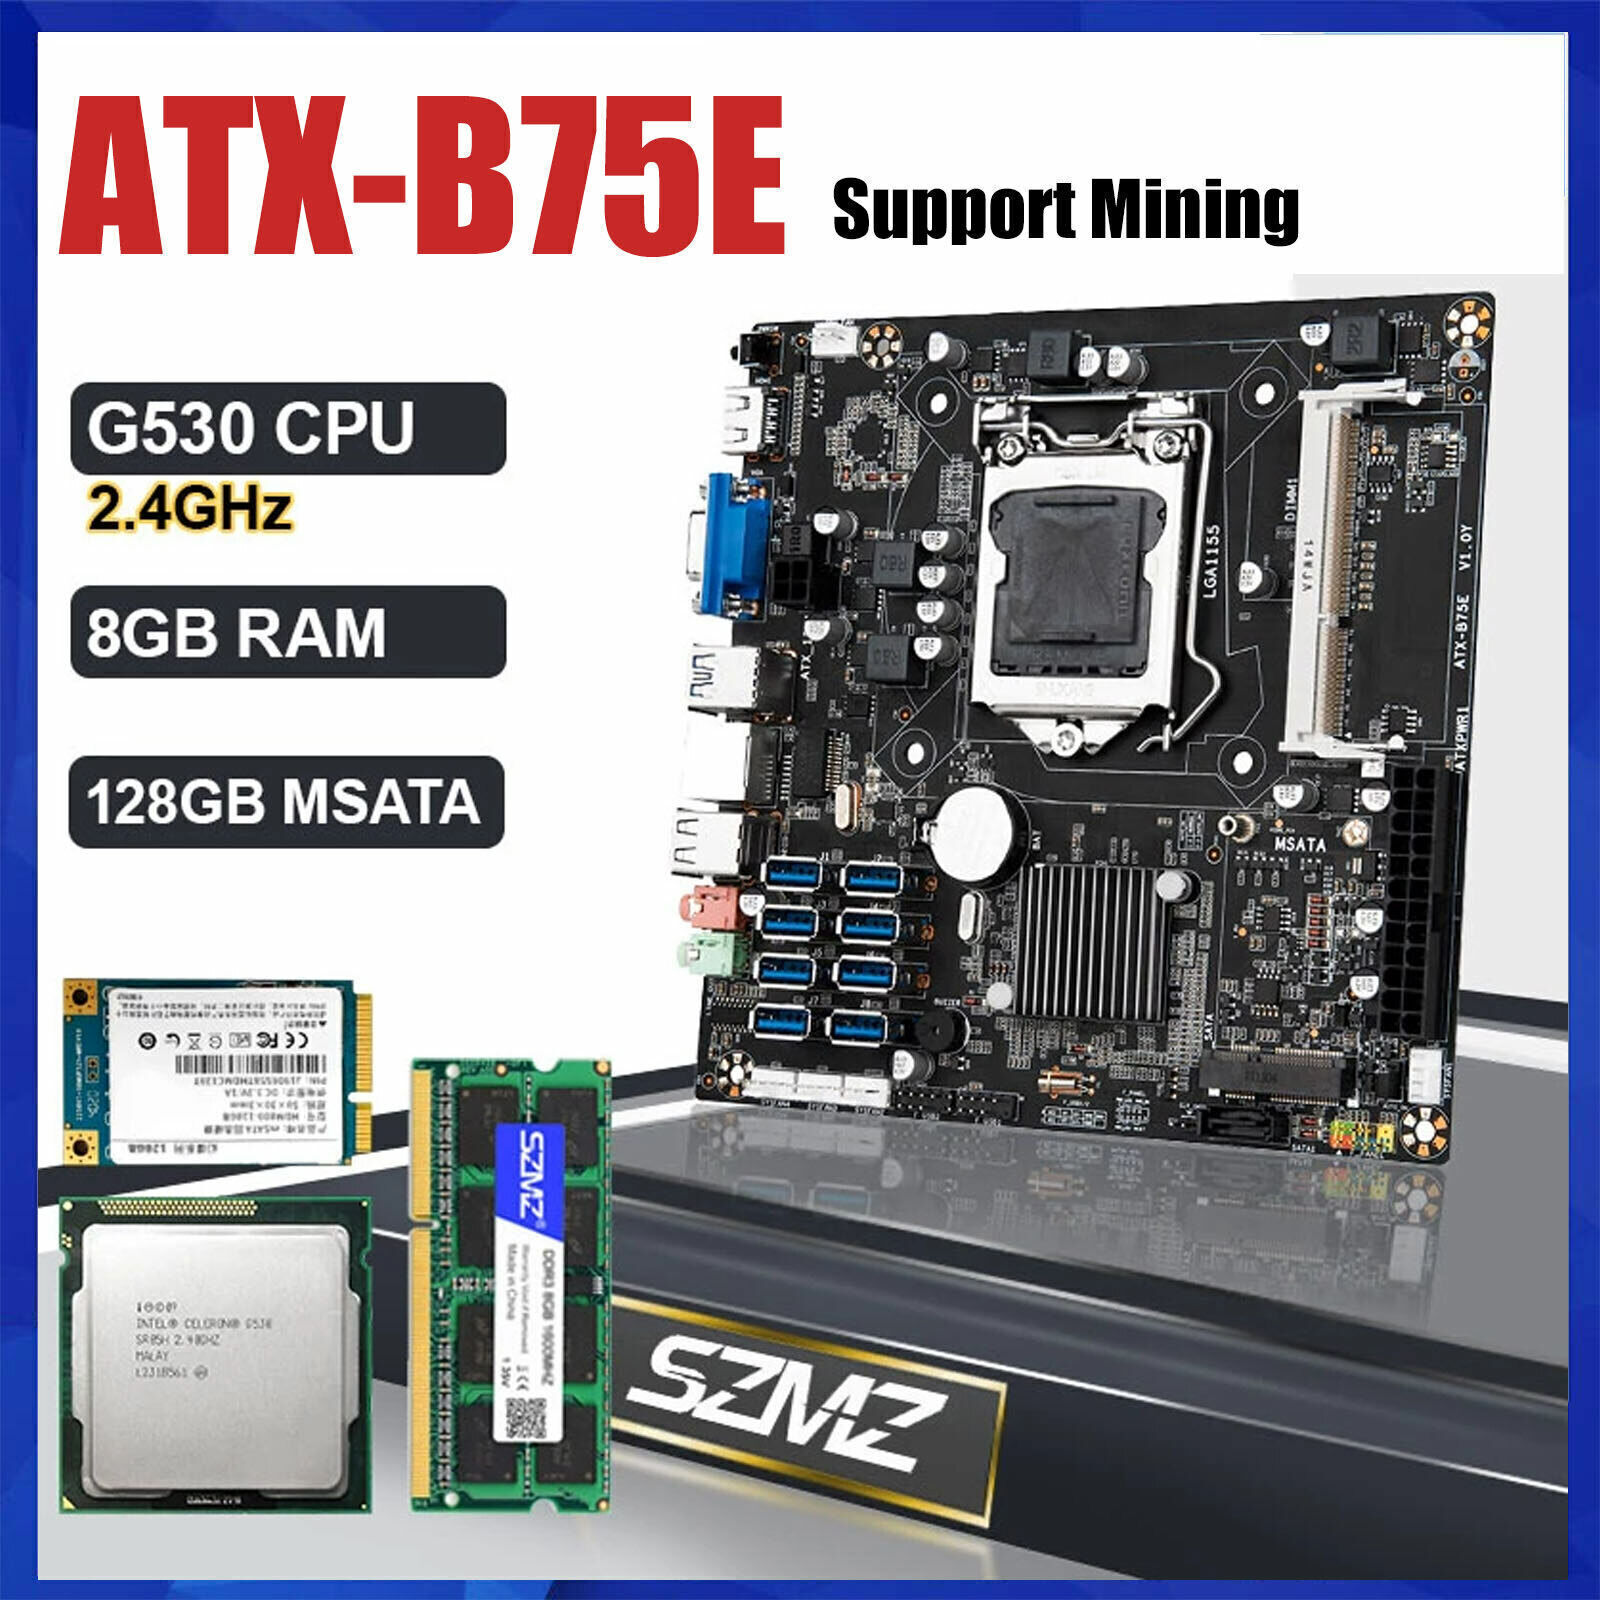 LGA 1155 B75E Mining Motherboard Kit with G530 CPU DDR3 8GB RAM 128GB MSATA SSD